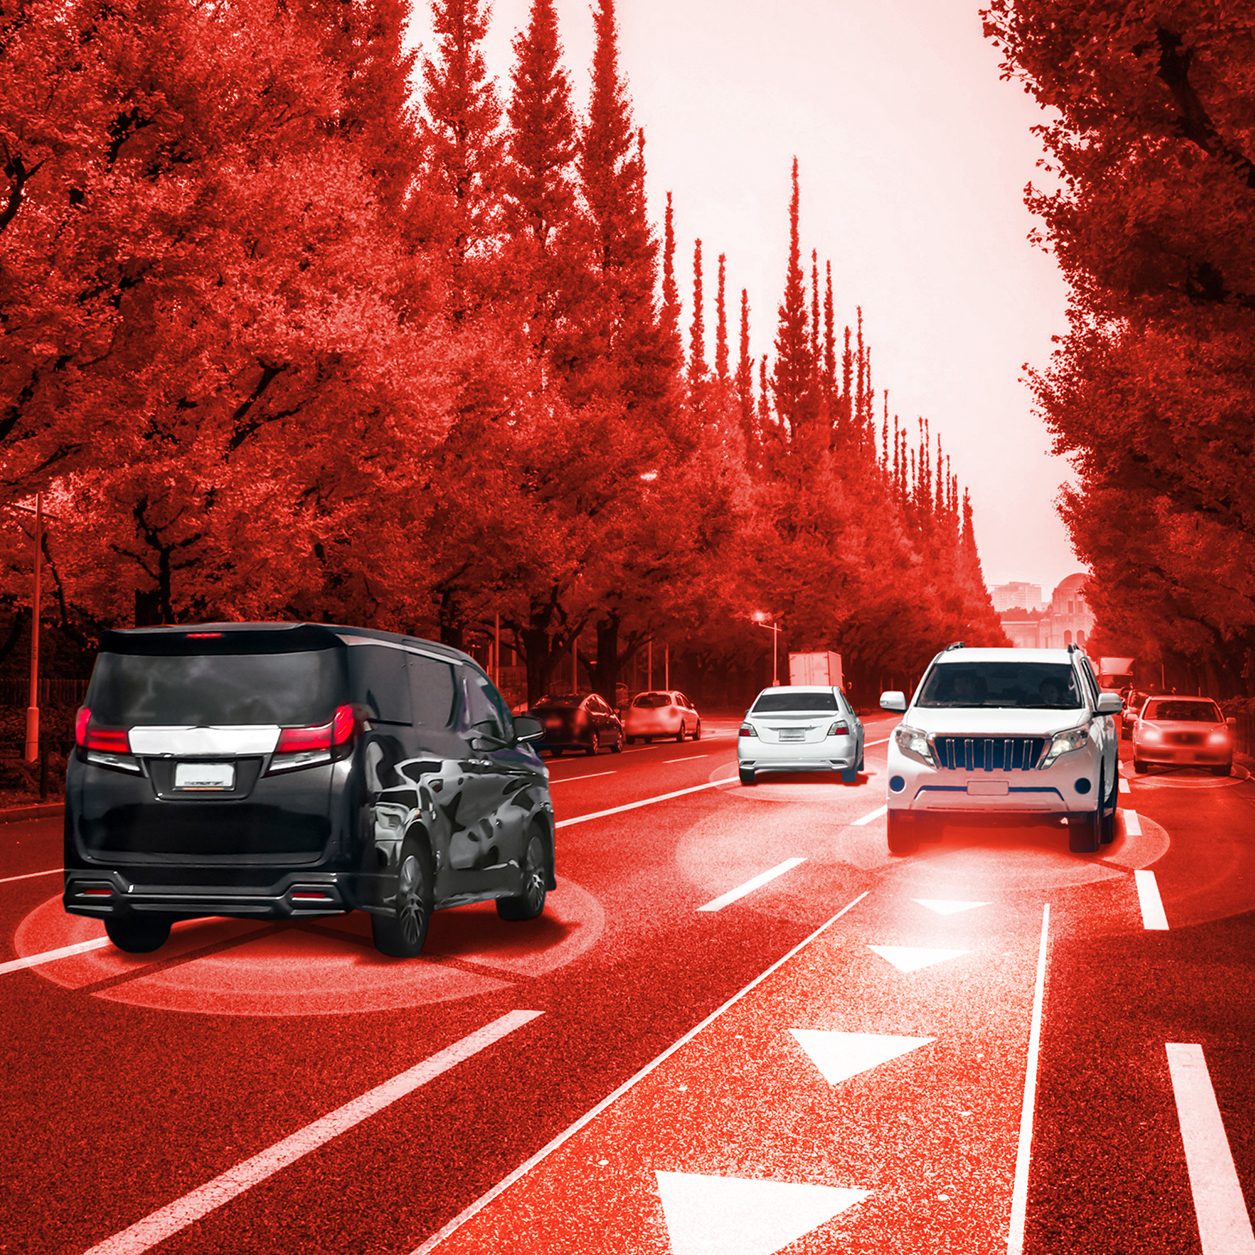 autonomous-car-sensor-system-concept-safety-driverless-mode-car-control_Cotrolle-Kopie